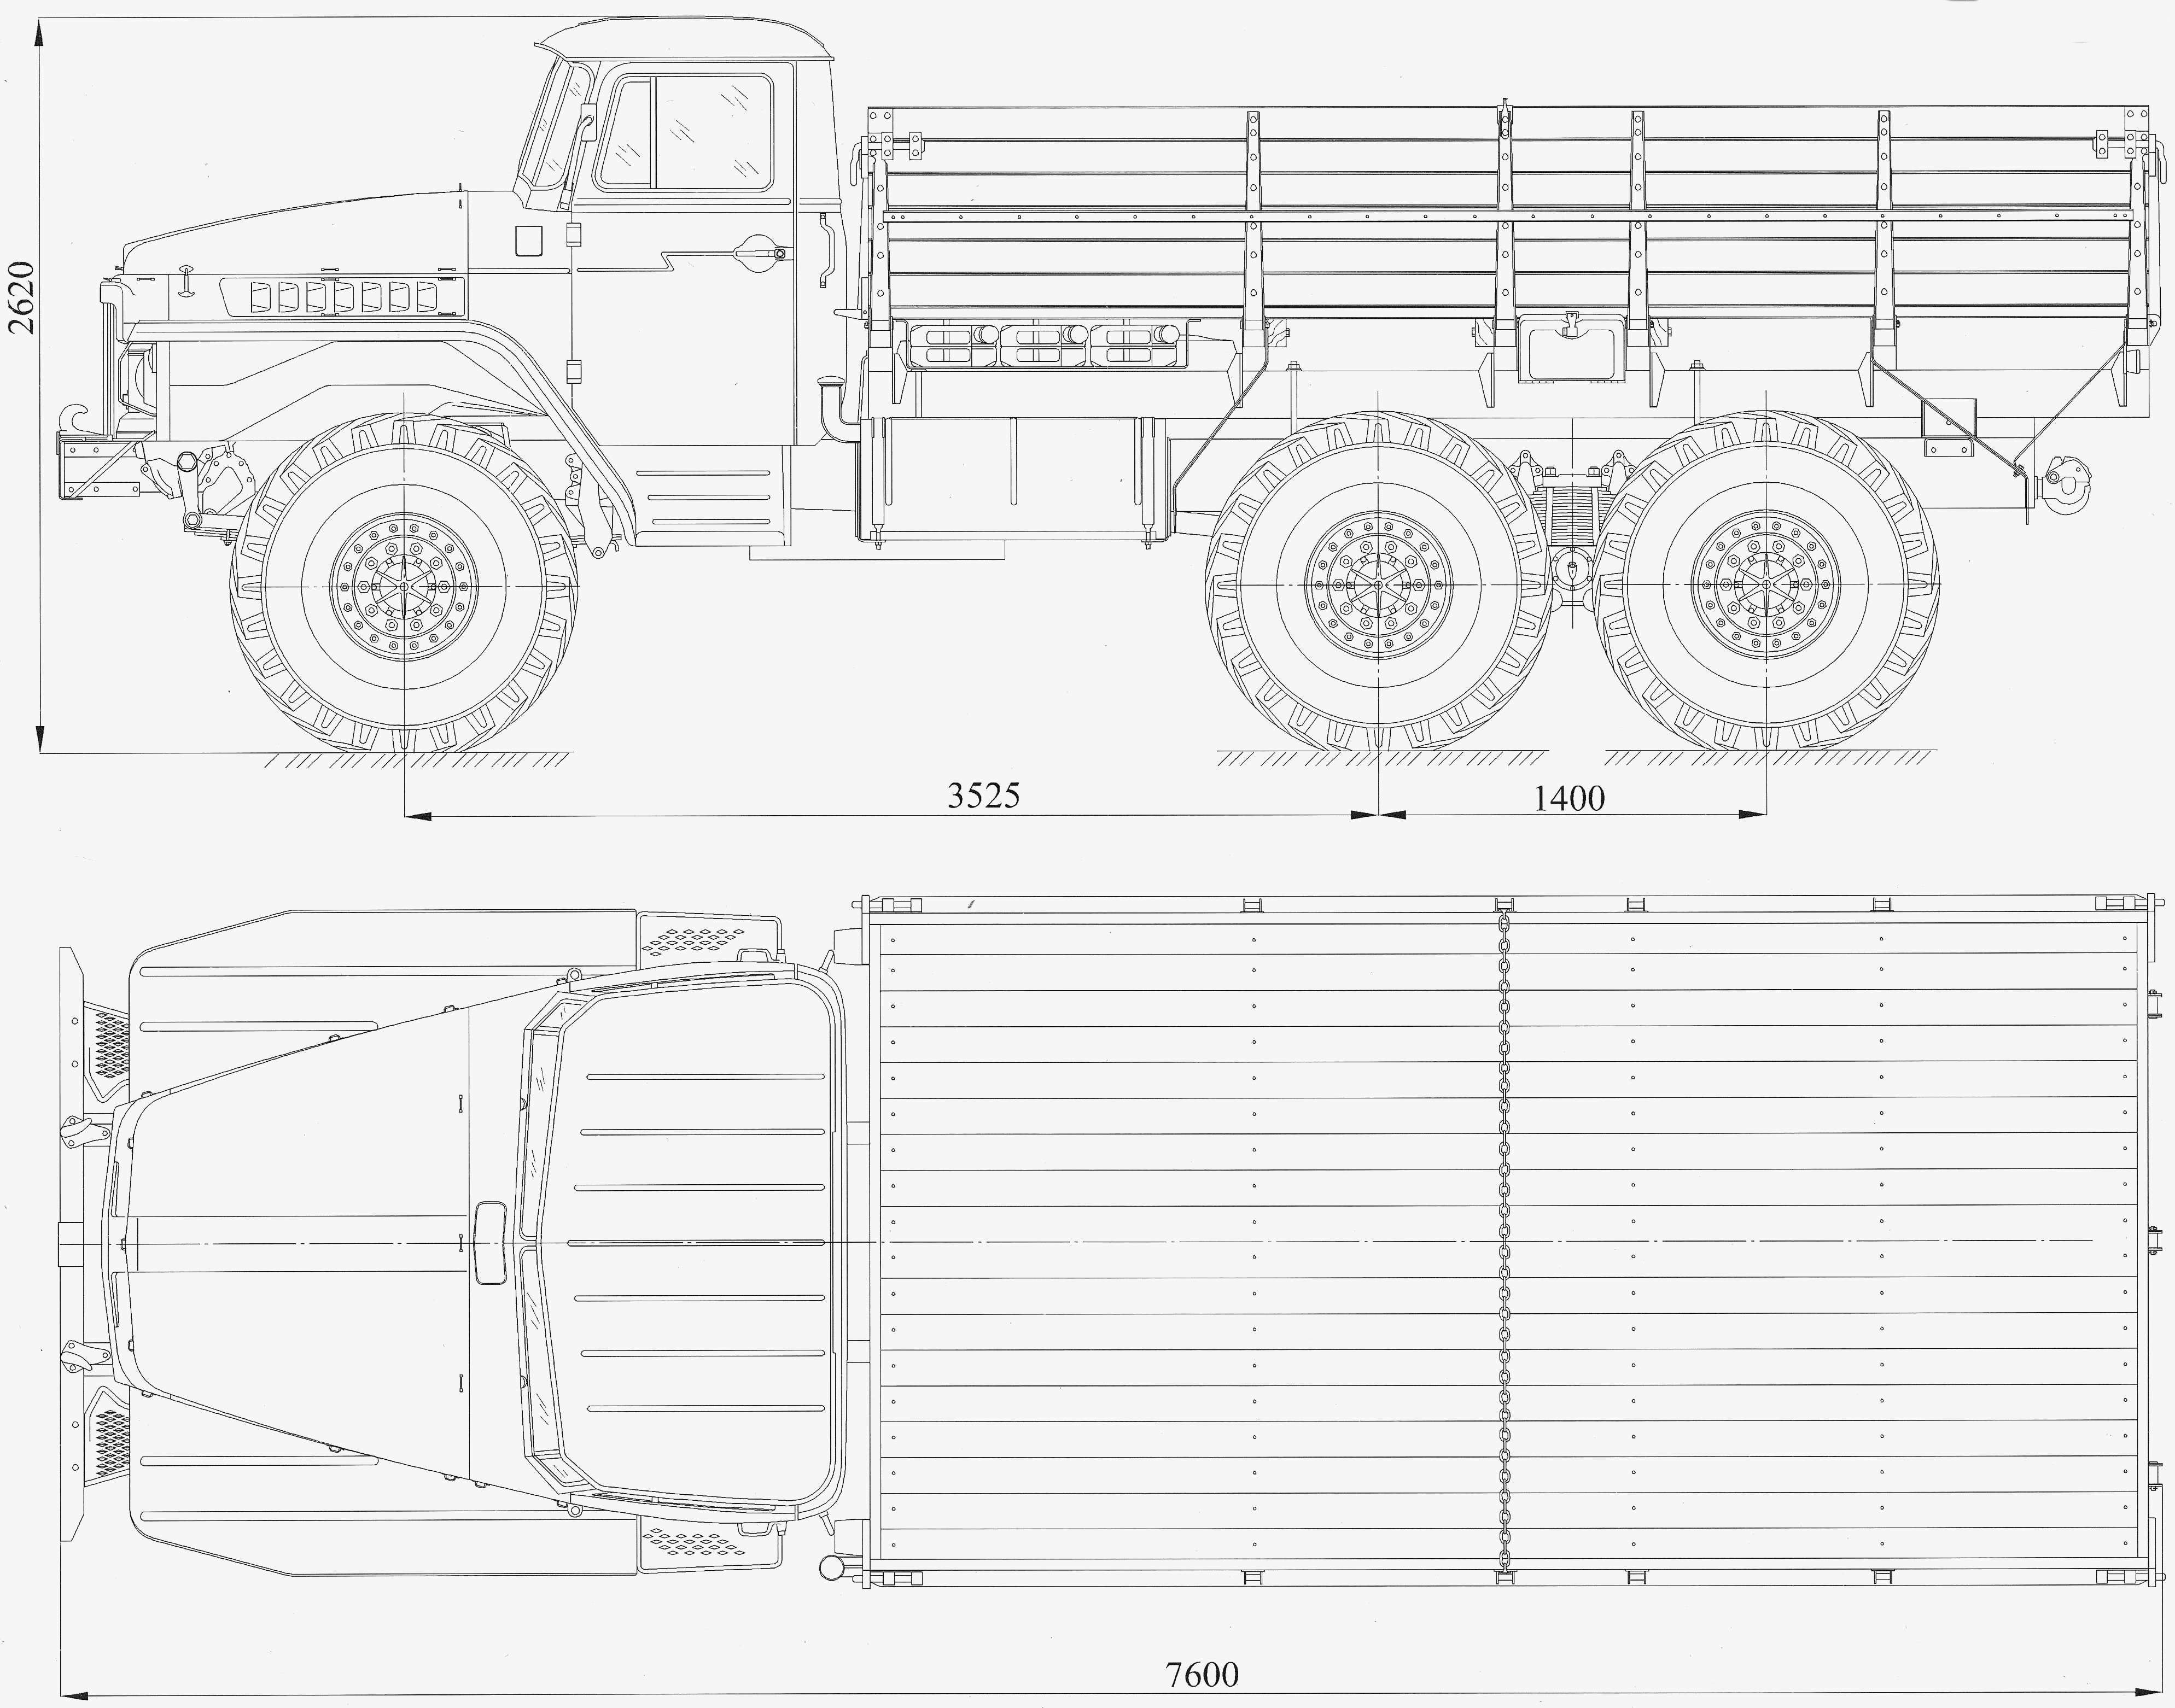 Ural 377 blueprint